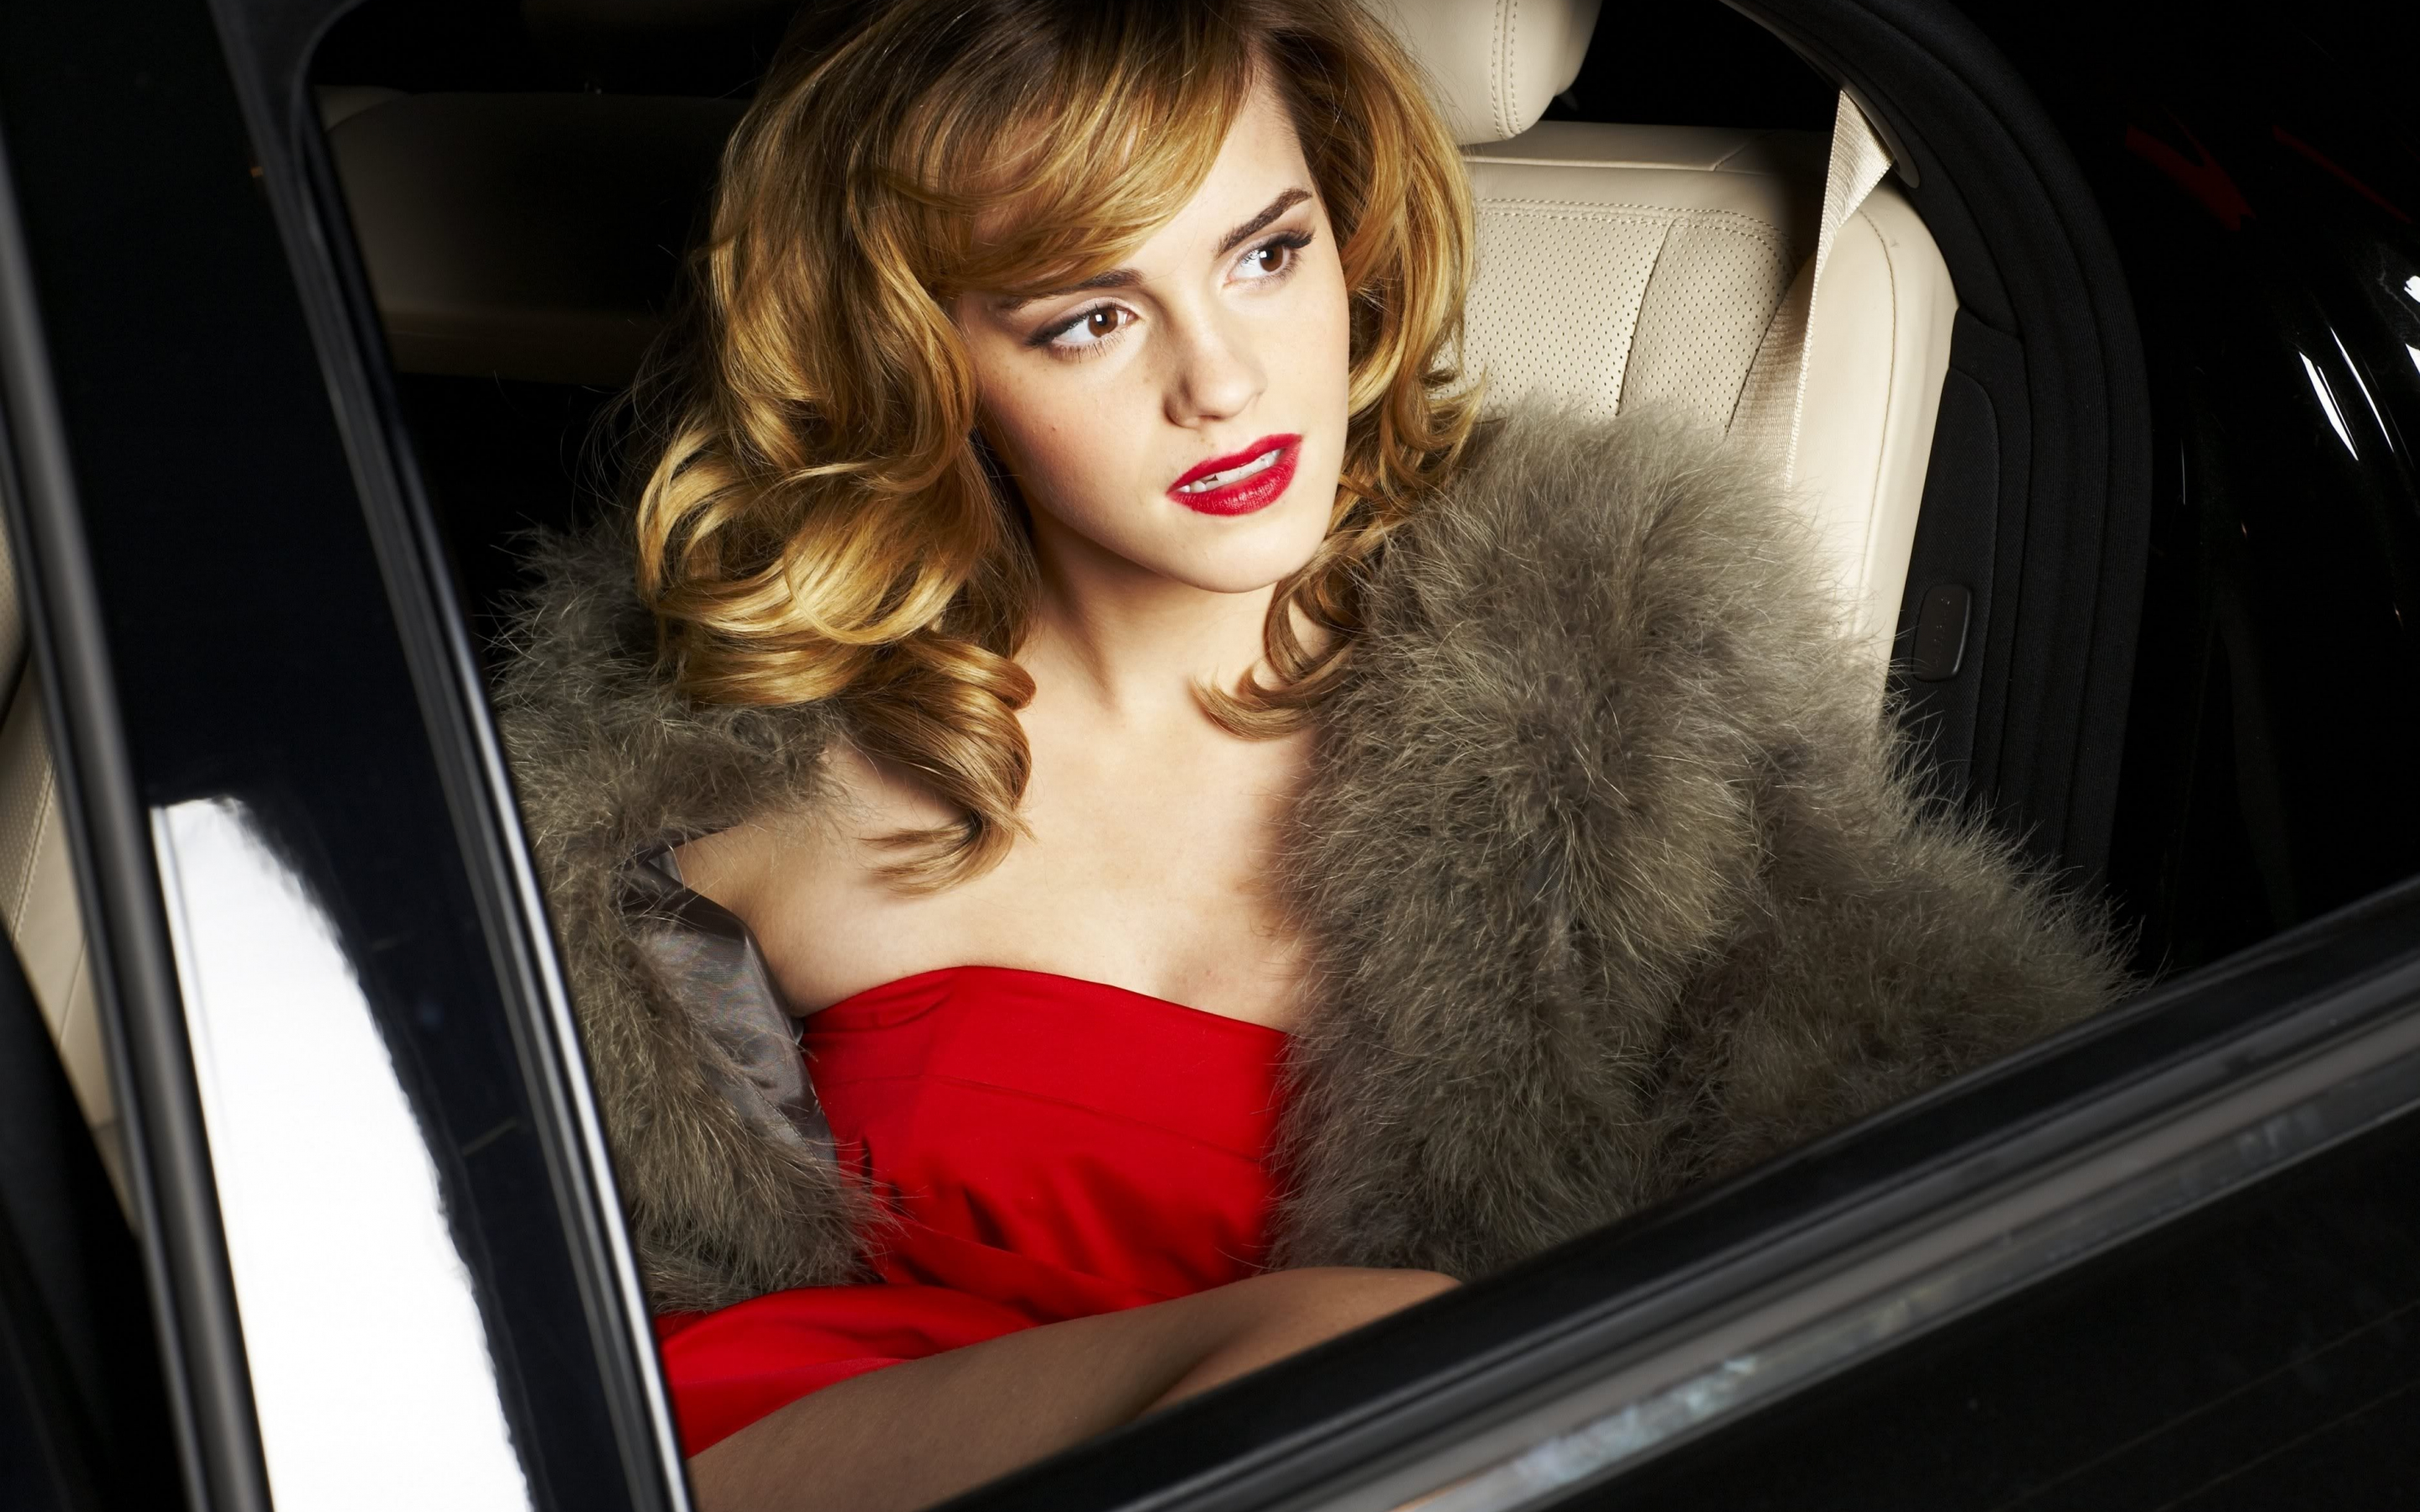 Emma watson, red dress, inside car, looking away, 2880x1800 wallpaper